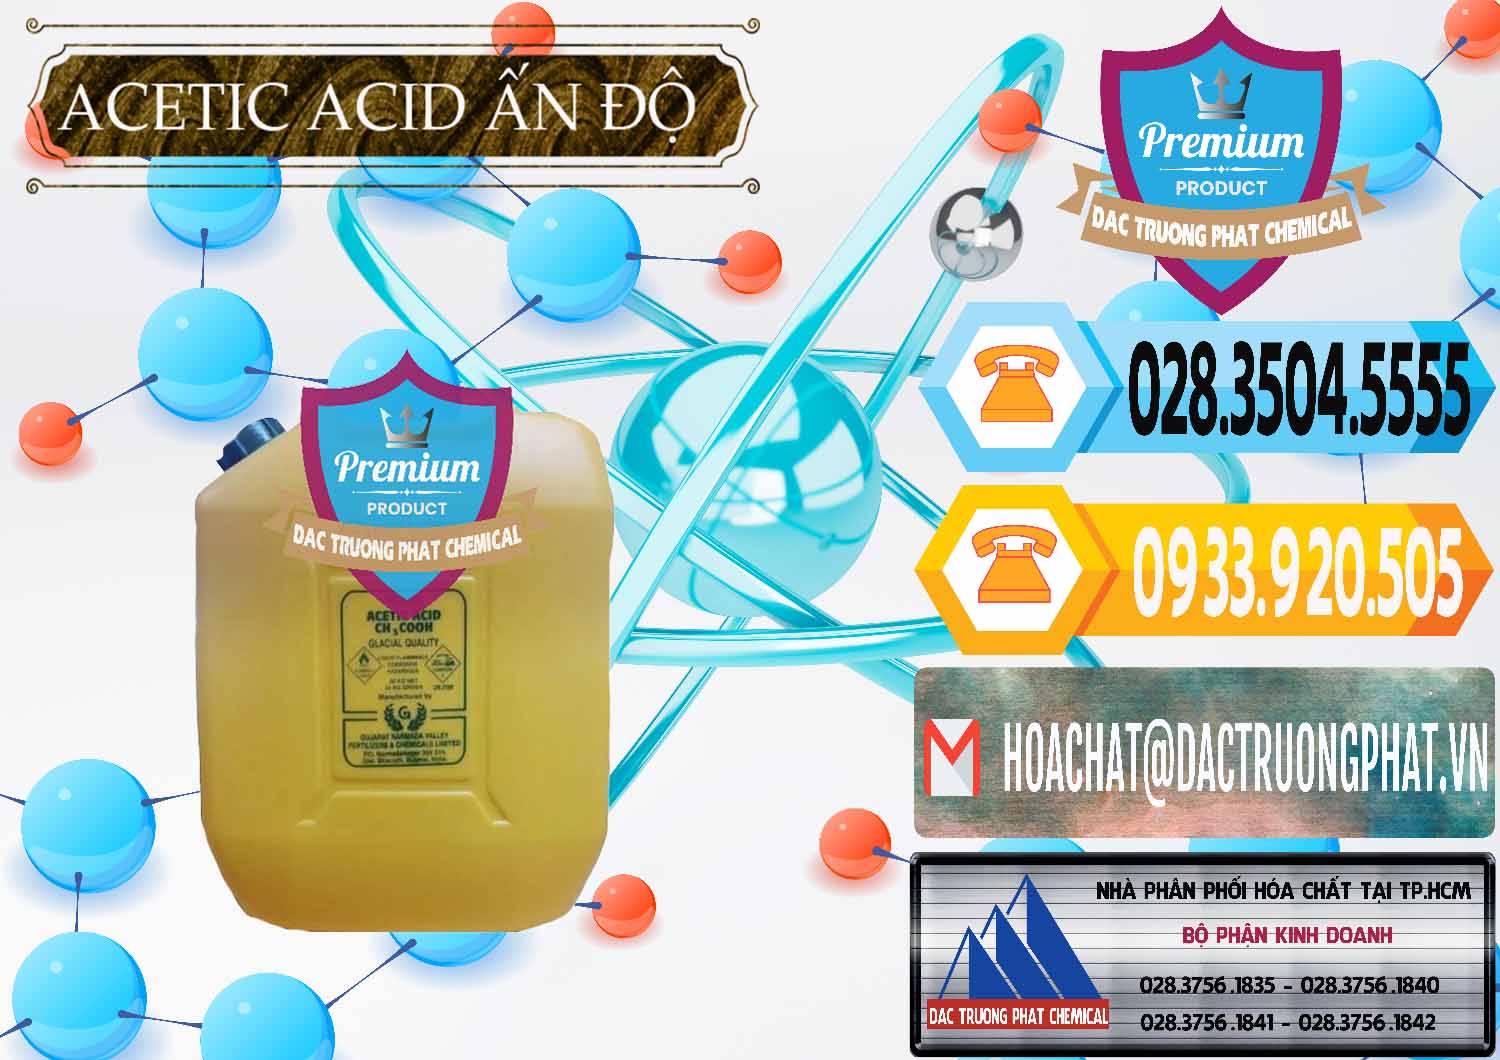 Cty cung cấp ( bán ) Acetic Acid – Axit Acetic Ấn Độ India - 0359 - Đơn vị kinh doanh và phân phối hóa chất tại TP.HCM - hoachattayrua.net